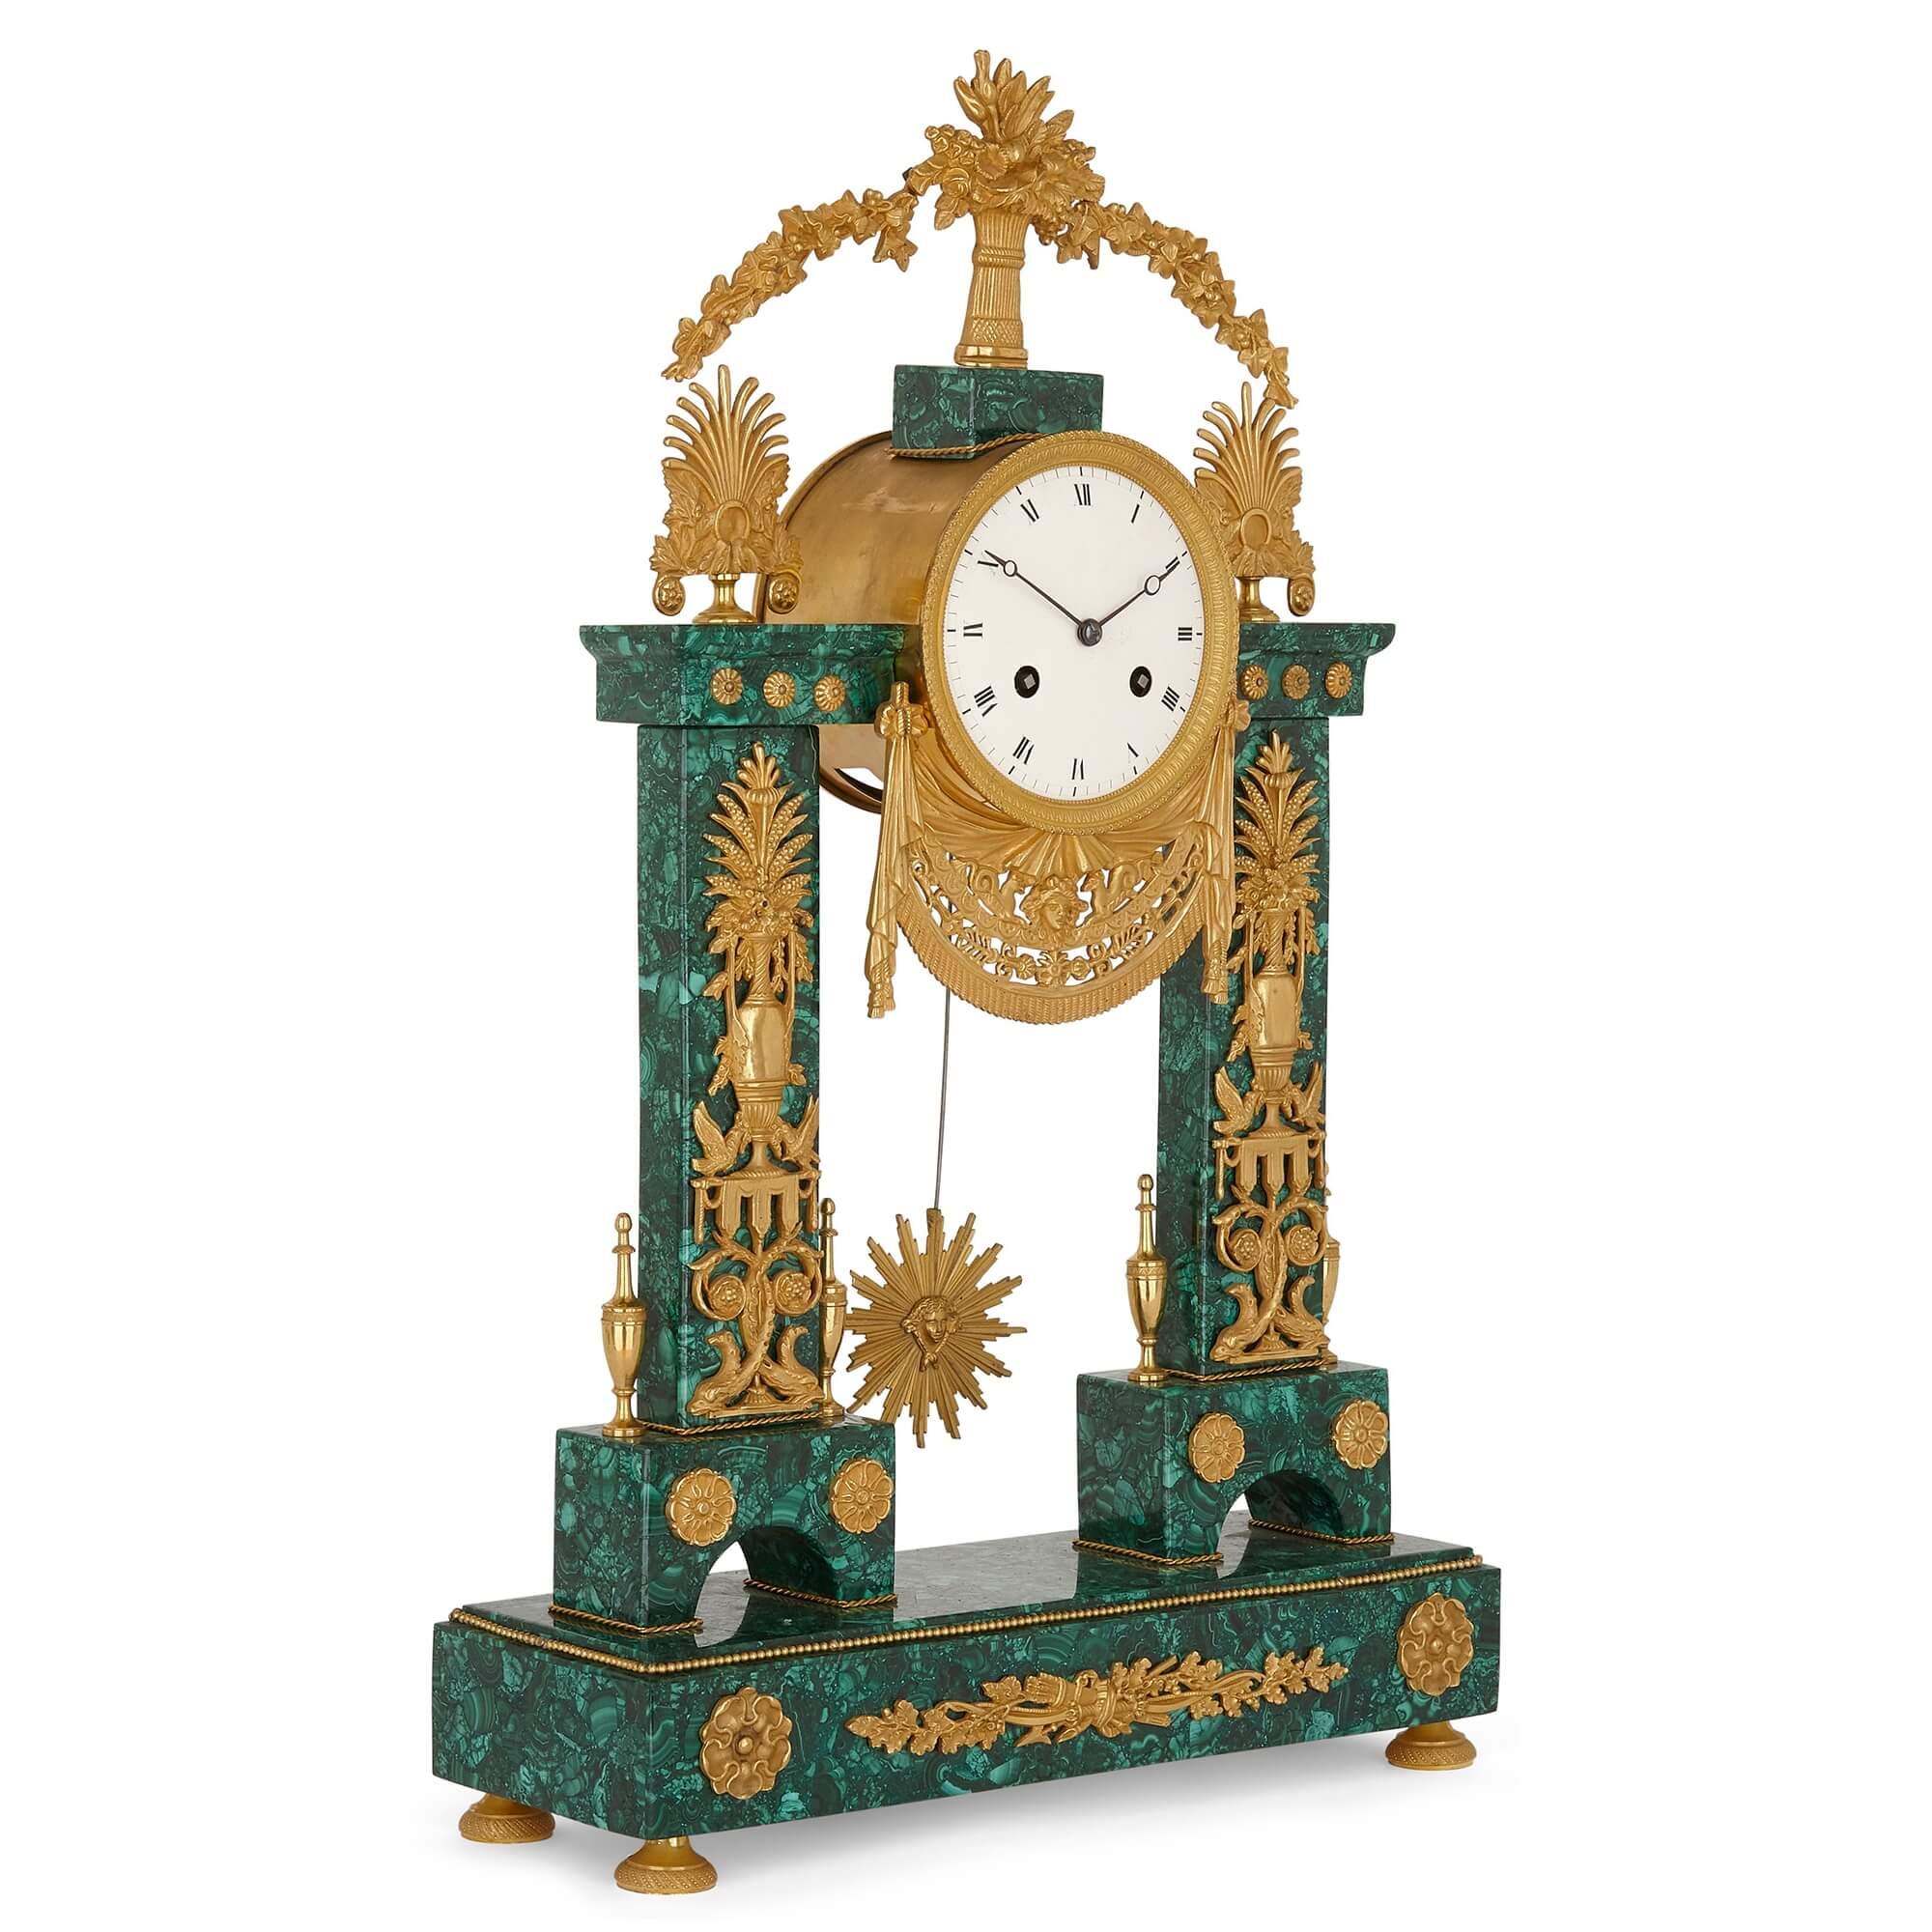 Antike neoklassizistische Louis XVI-Uhr aus vergoldeter Bronze und Malachit
Französisch, Ende 18. Jahrhundert
Maße: Höhe 56cm, Breite 35cm, Tiefe 12cm

Diese raffinierte Kaminsimsuhr aus vergoldeter Bronze und späterem Malachitfurnier ist im